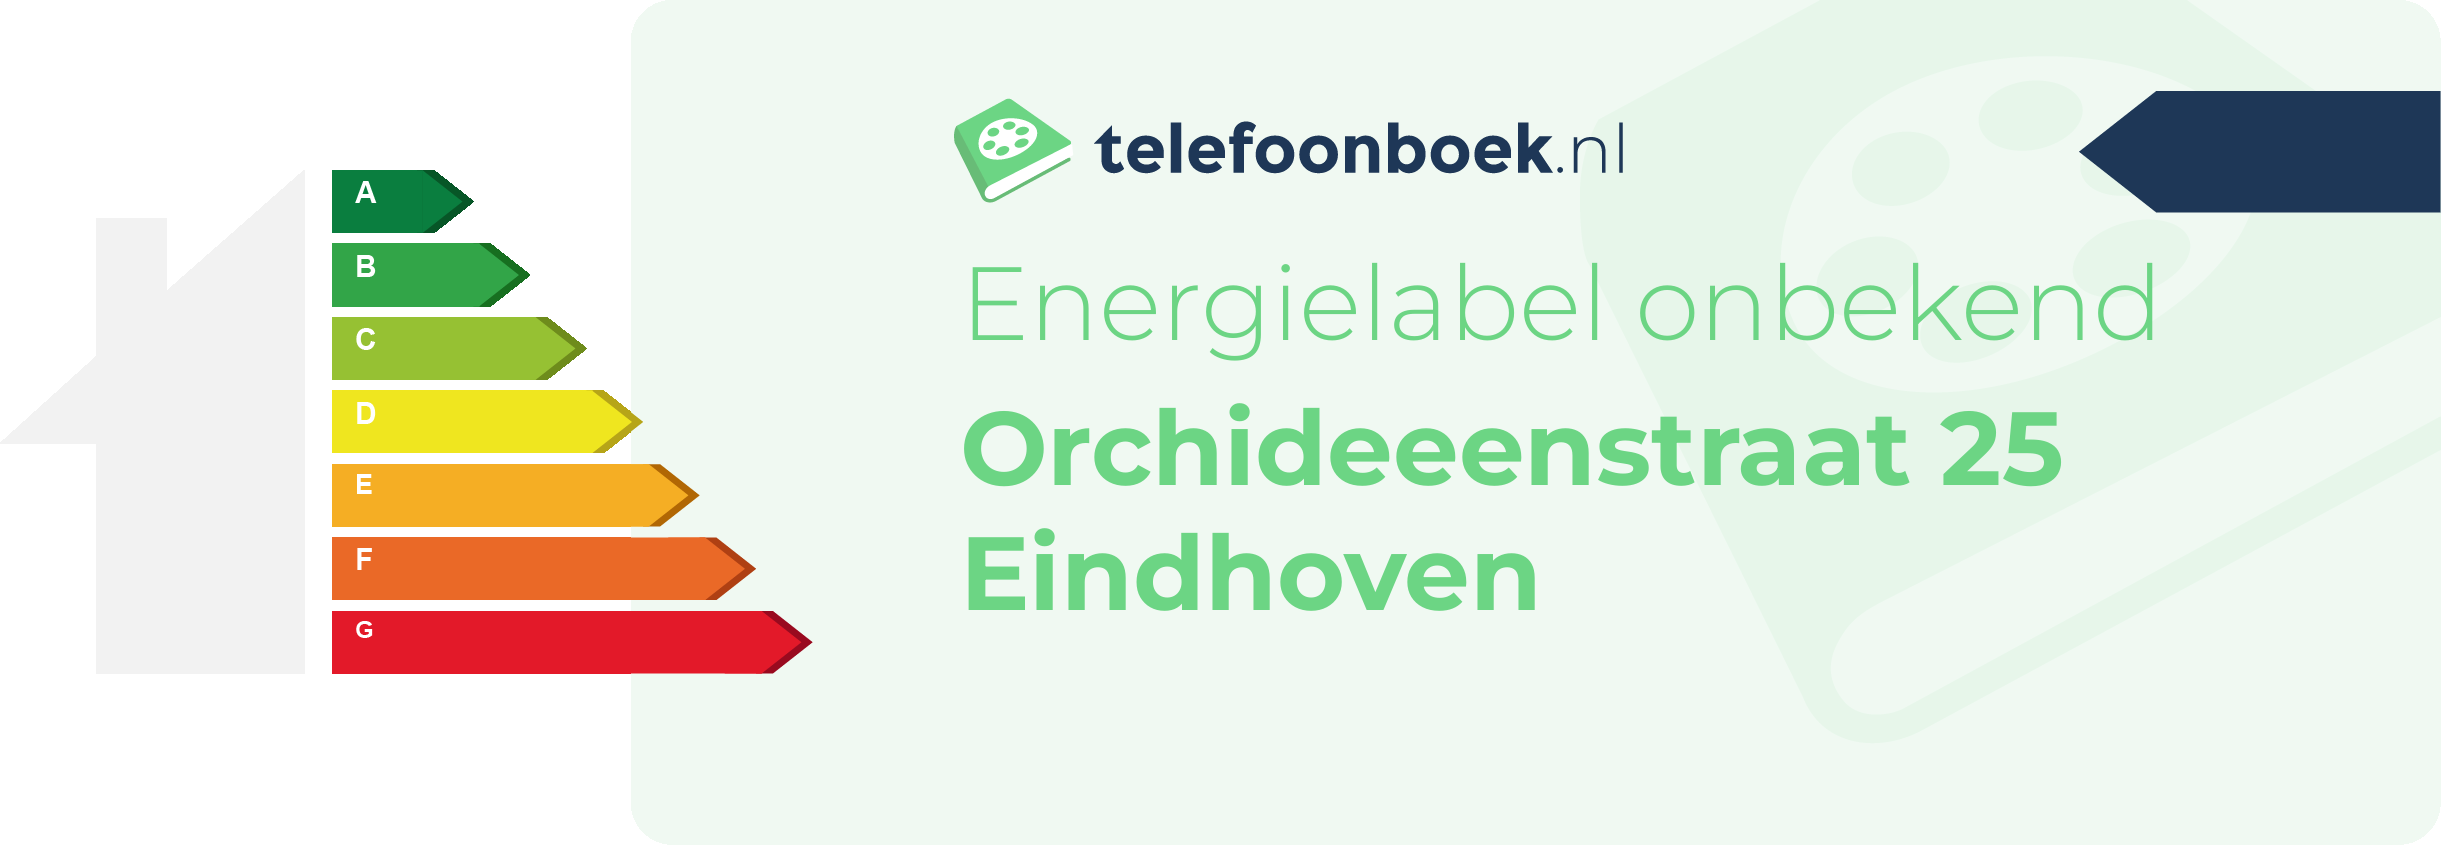 Energielabel Orchideeenstraat 25 Eindhoven